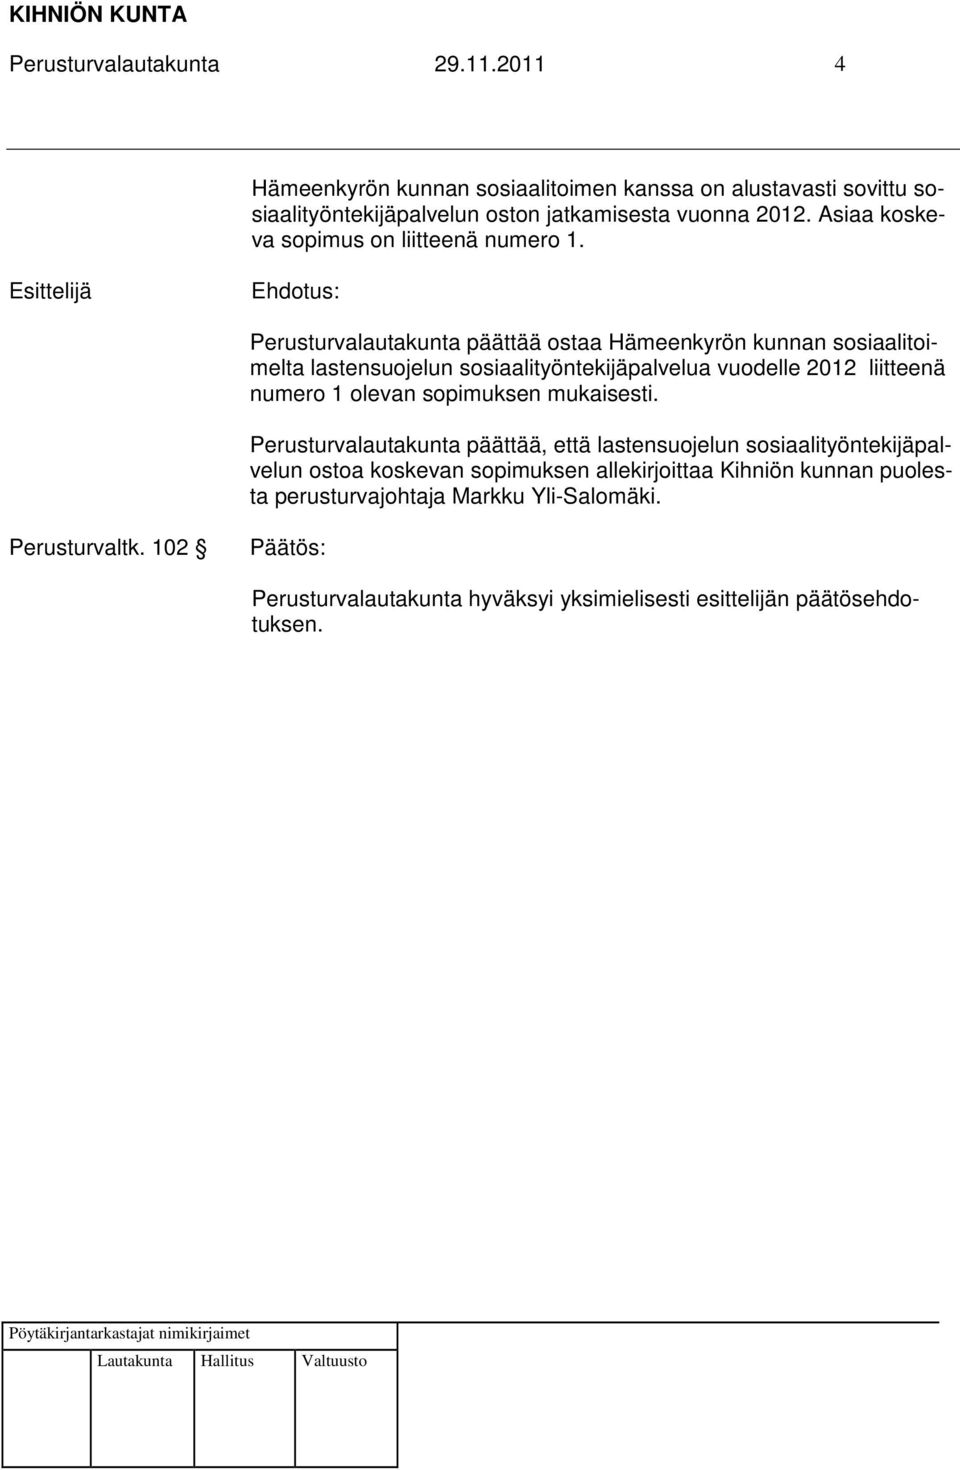 Perusturvalautakunta päättää ostaa Hämeenkyrön kunnan sosiaalitoimelta lastensuojelun sosiaalityöntekijäpalvelua vuodelle 2012 liitteenä numero 1 olevan